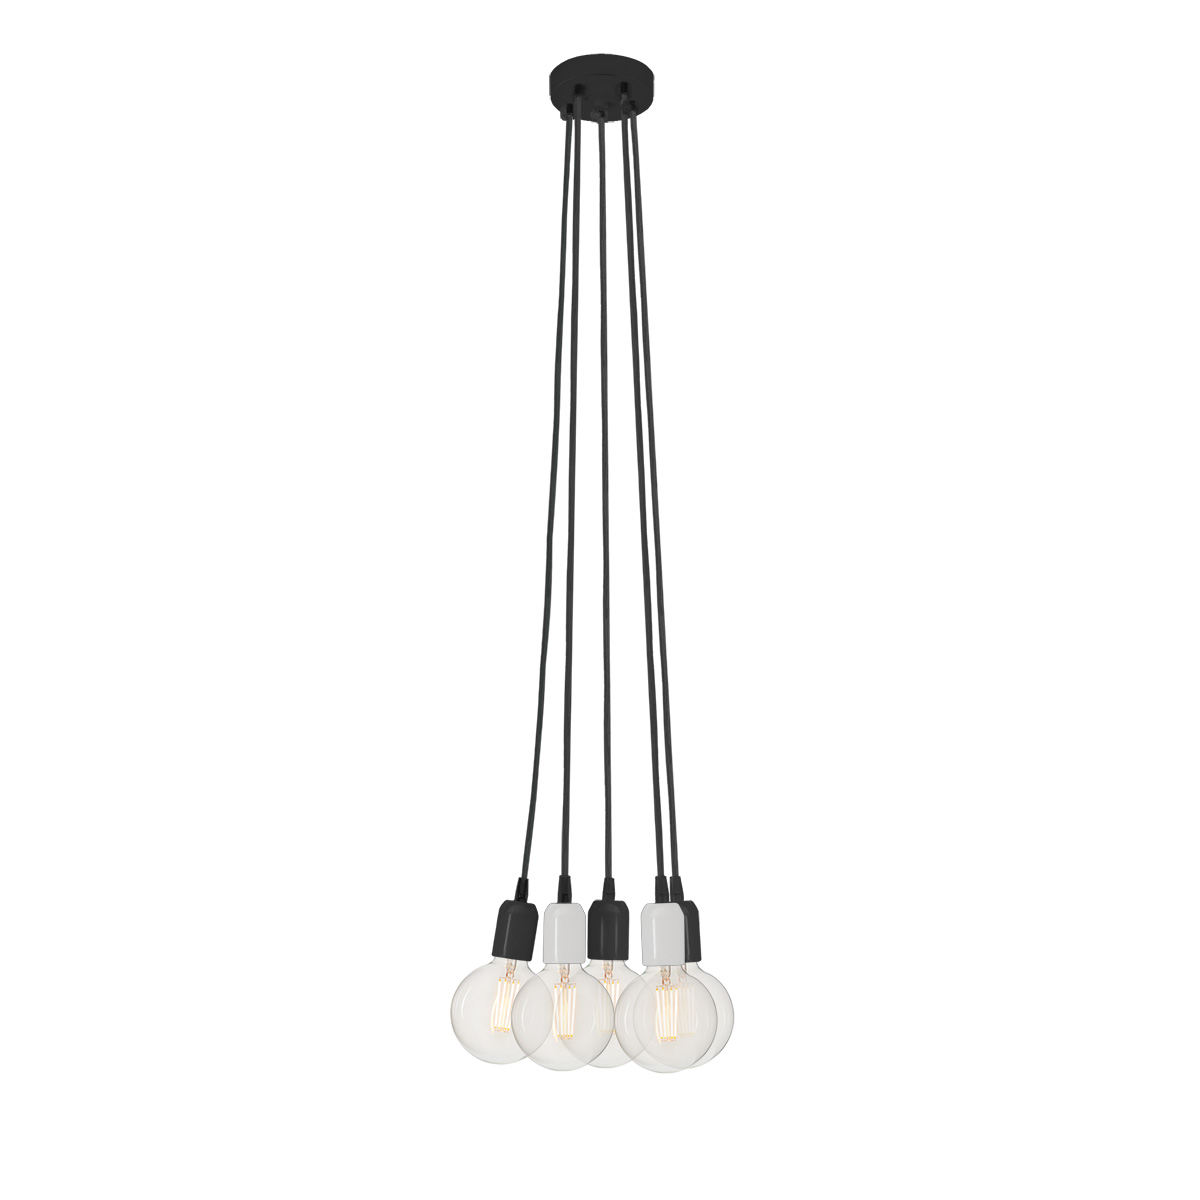 Μοντέρνο 5φωτο φωτιστικό ΚΑΛΩΔΙΑ modern 5-bulb chandelier